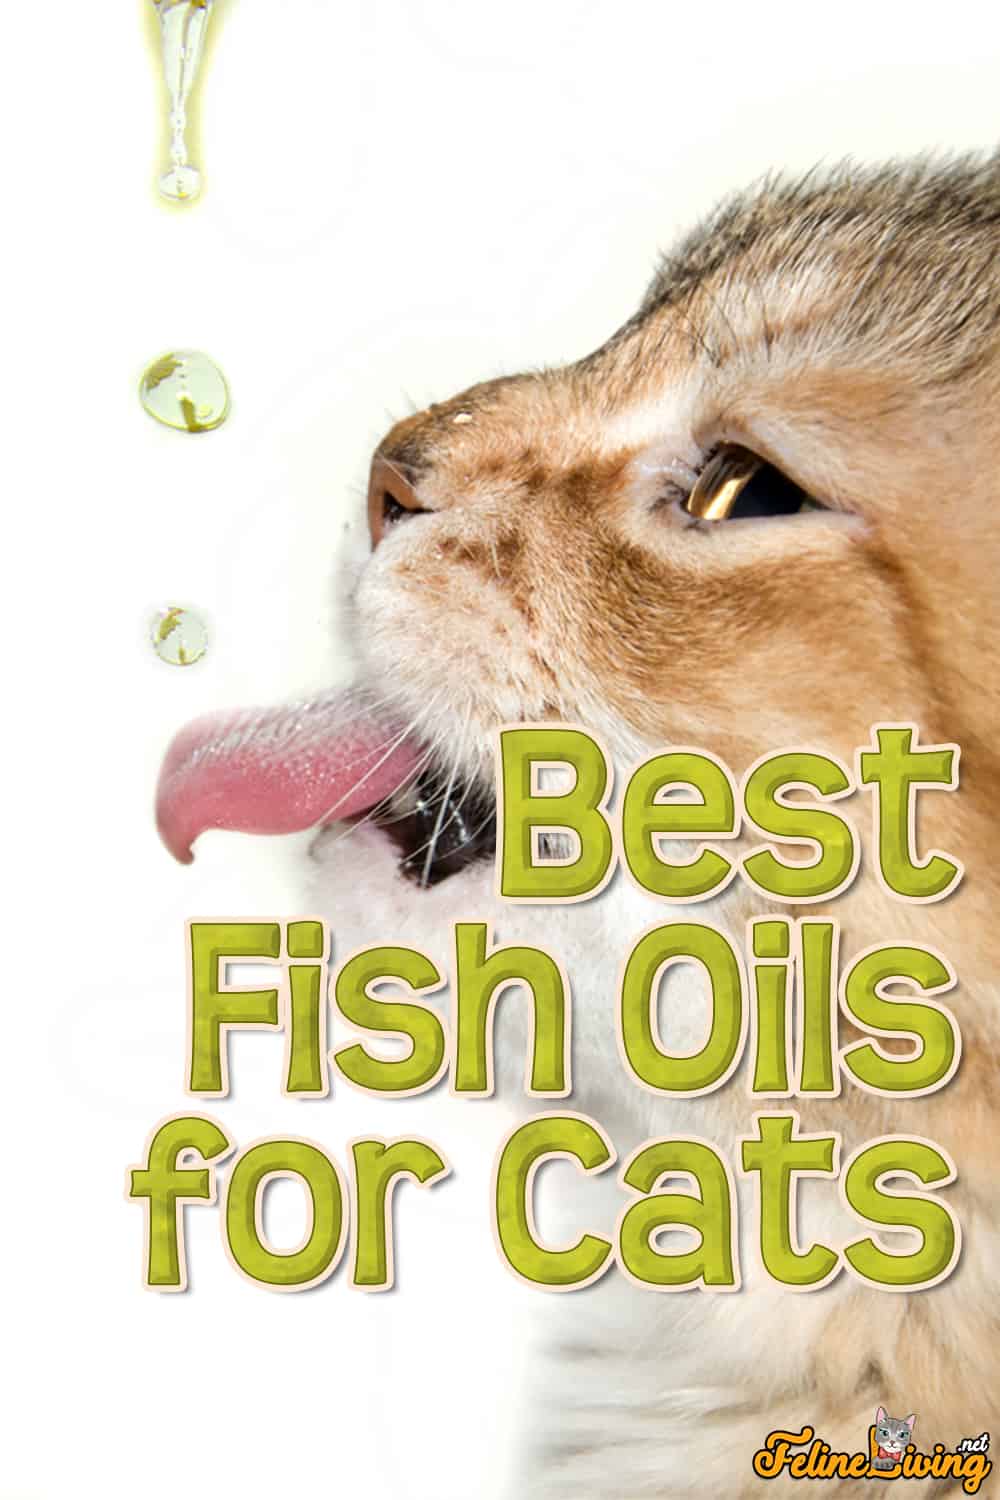 8 Beste visolie voor katten en waar u op moet letten bij het kopen van visolieproducten?